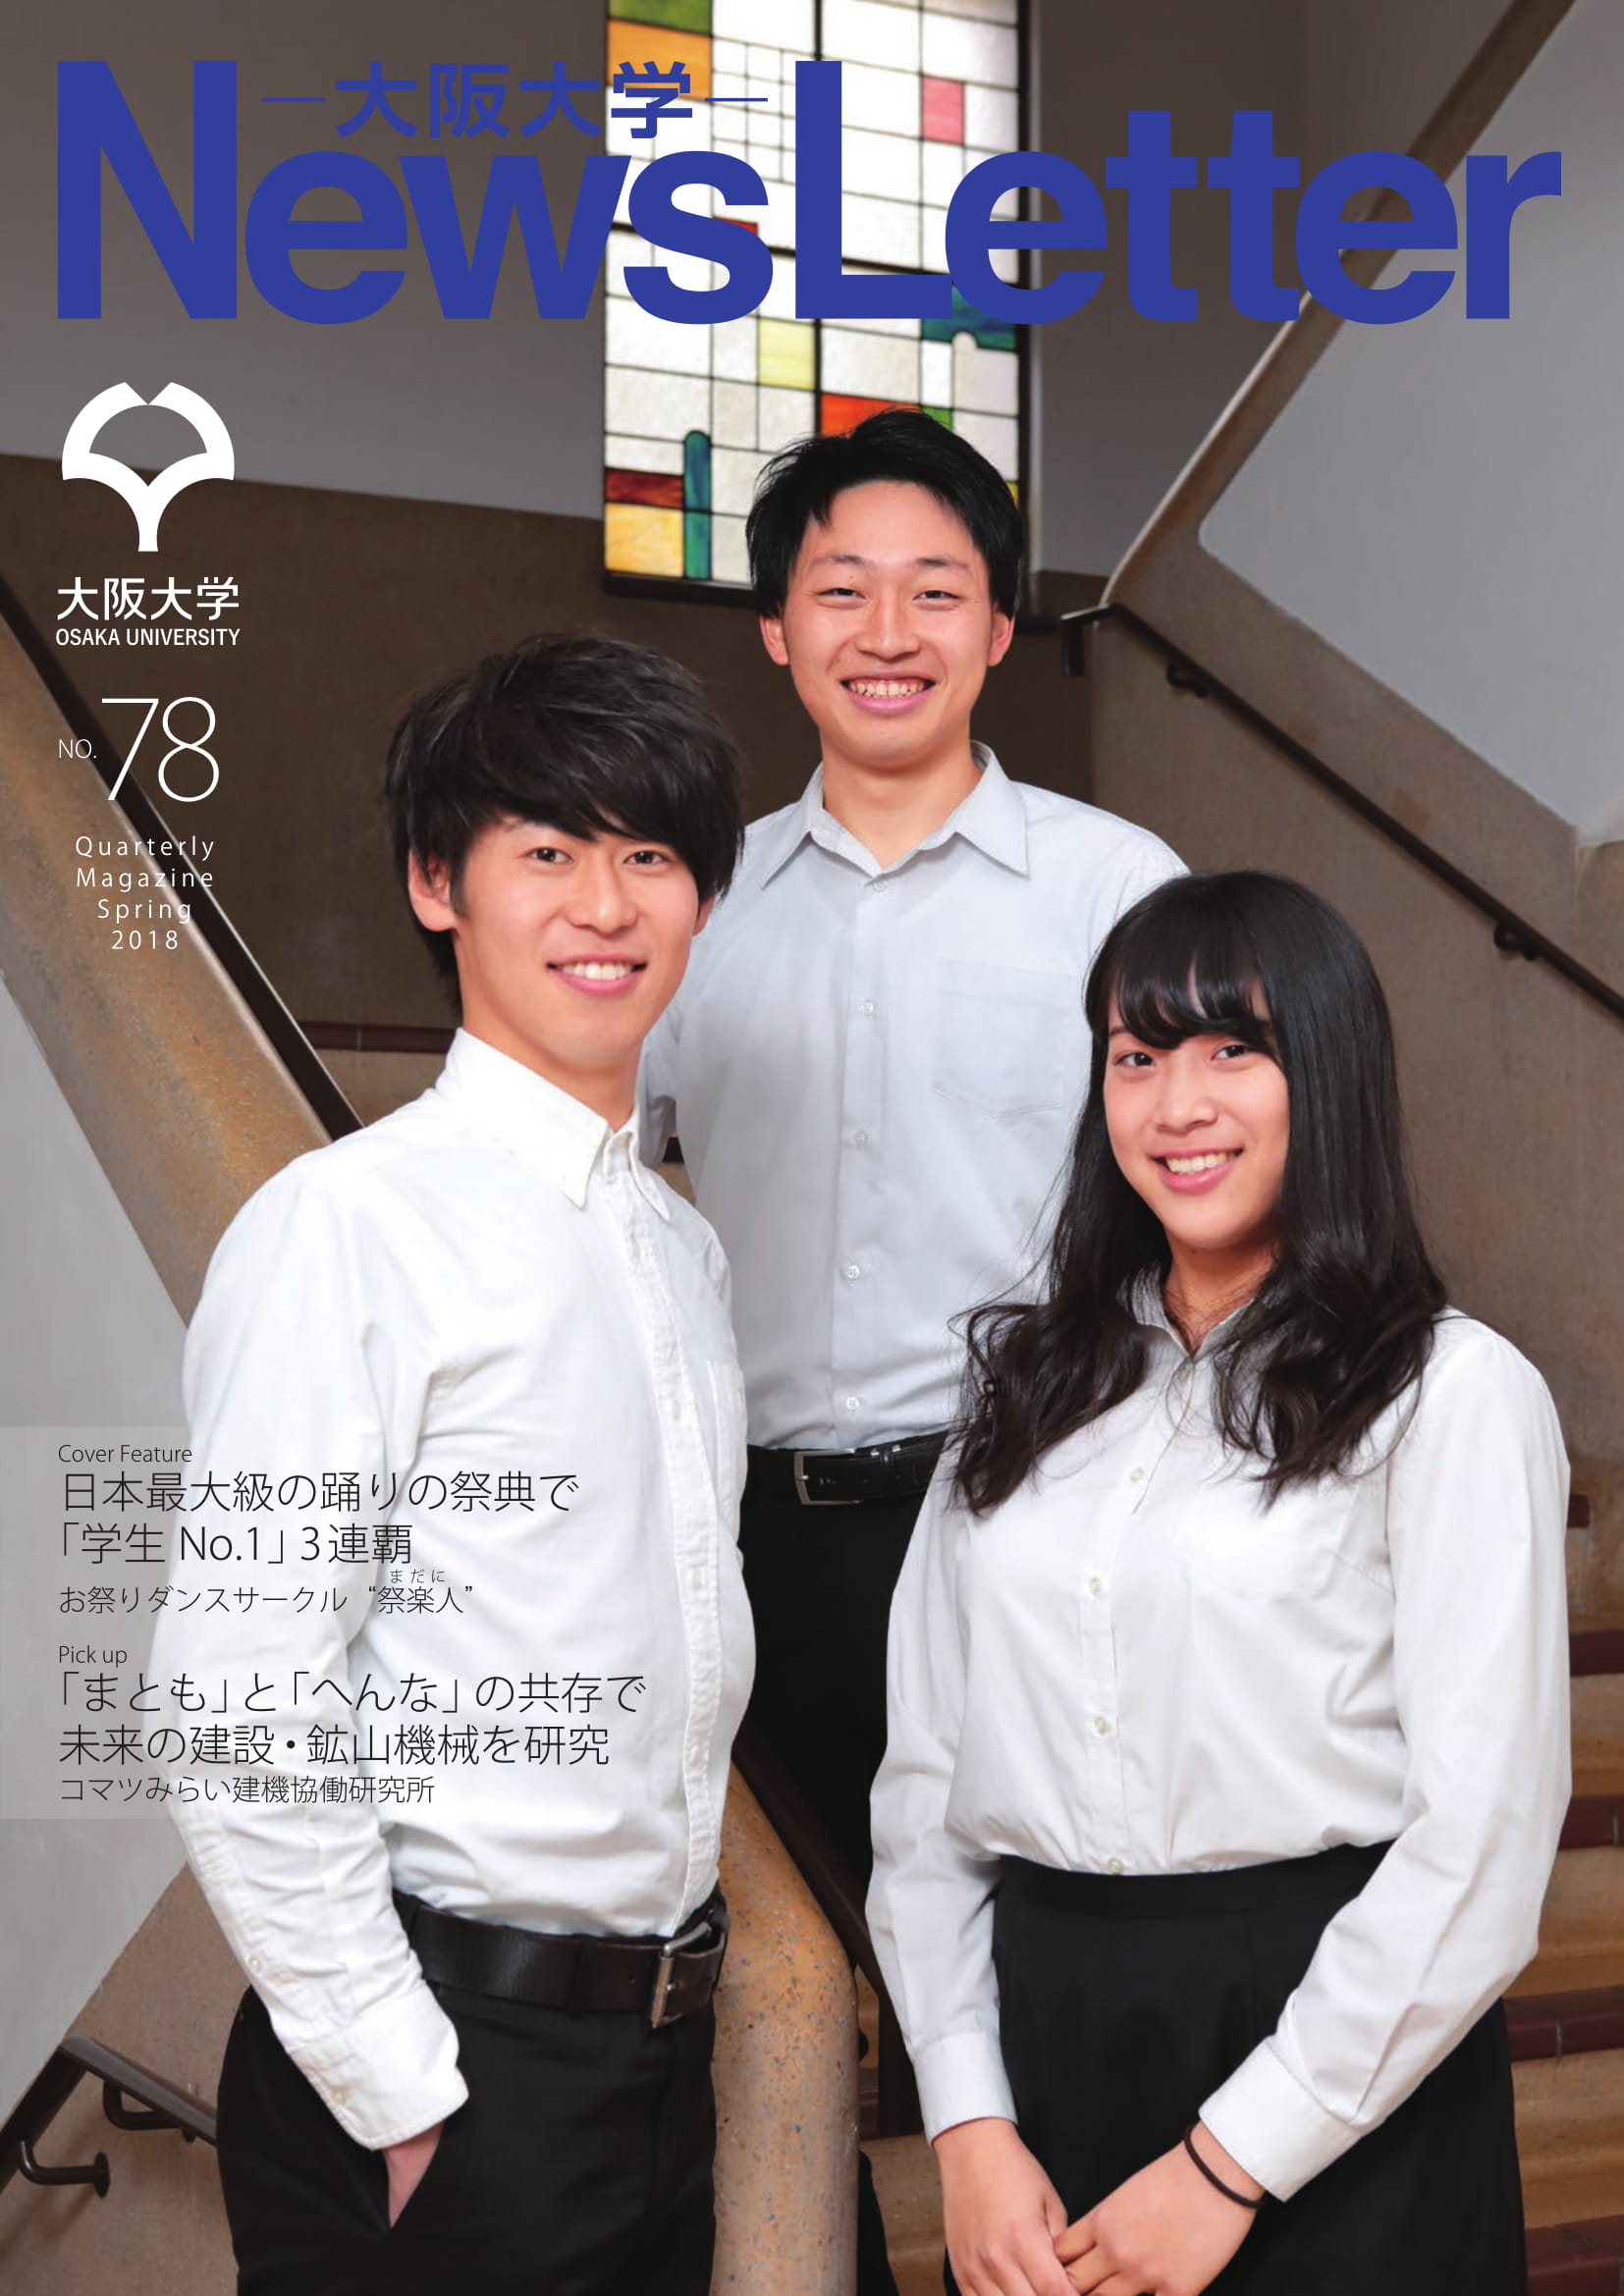 大阪大学ニューズレター2018春号を発行しました